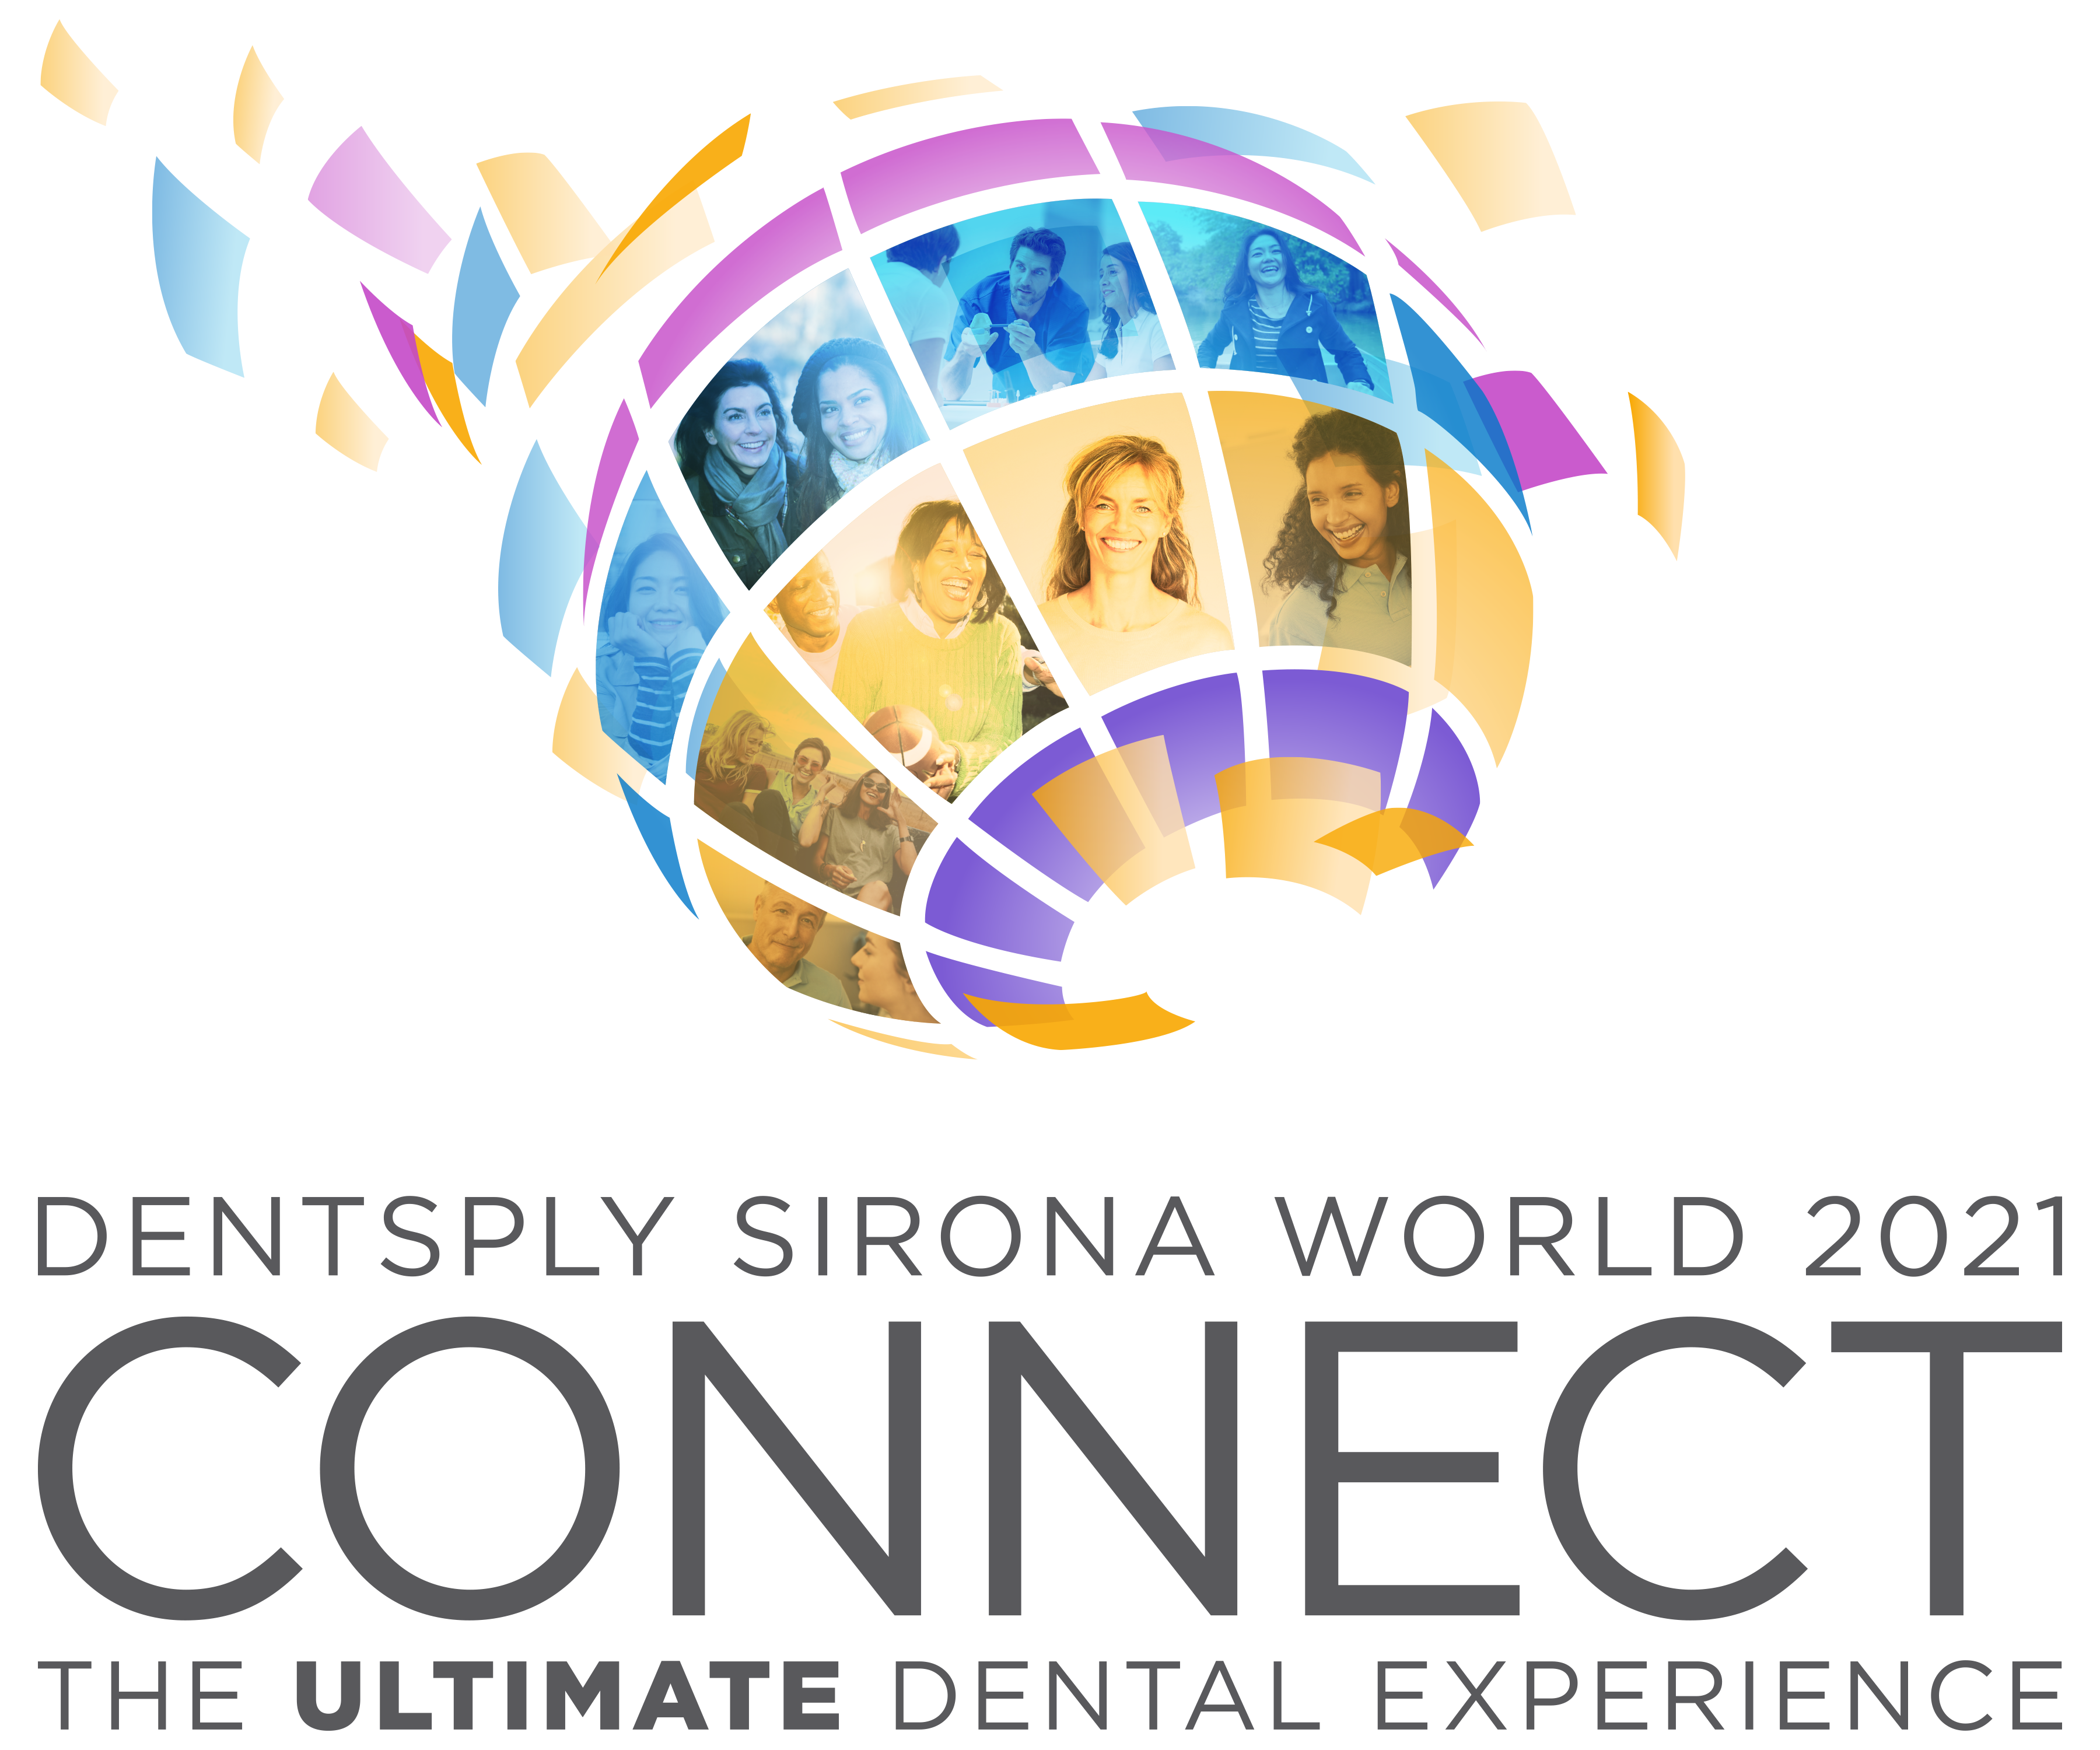 Registration Open for Denstply Sirona World 2021